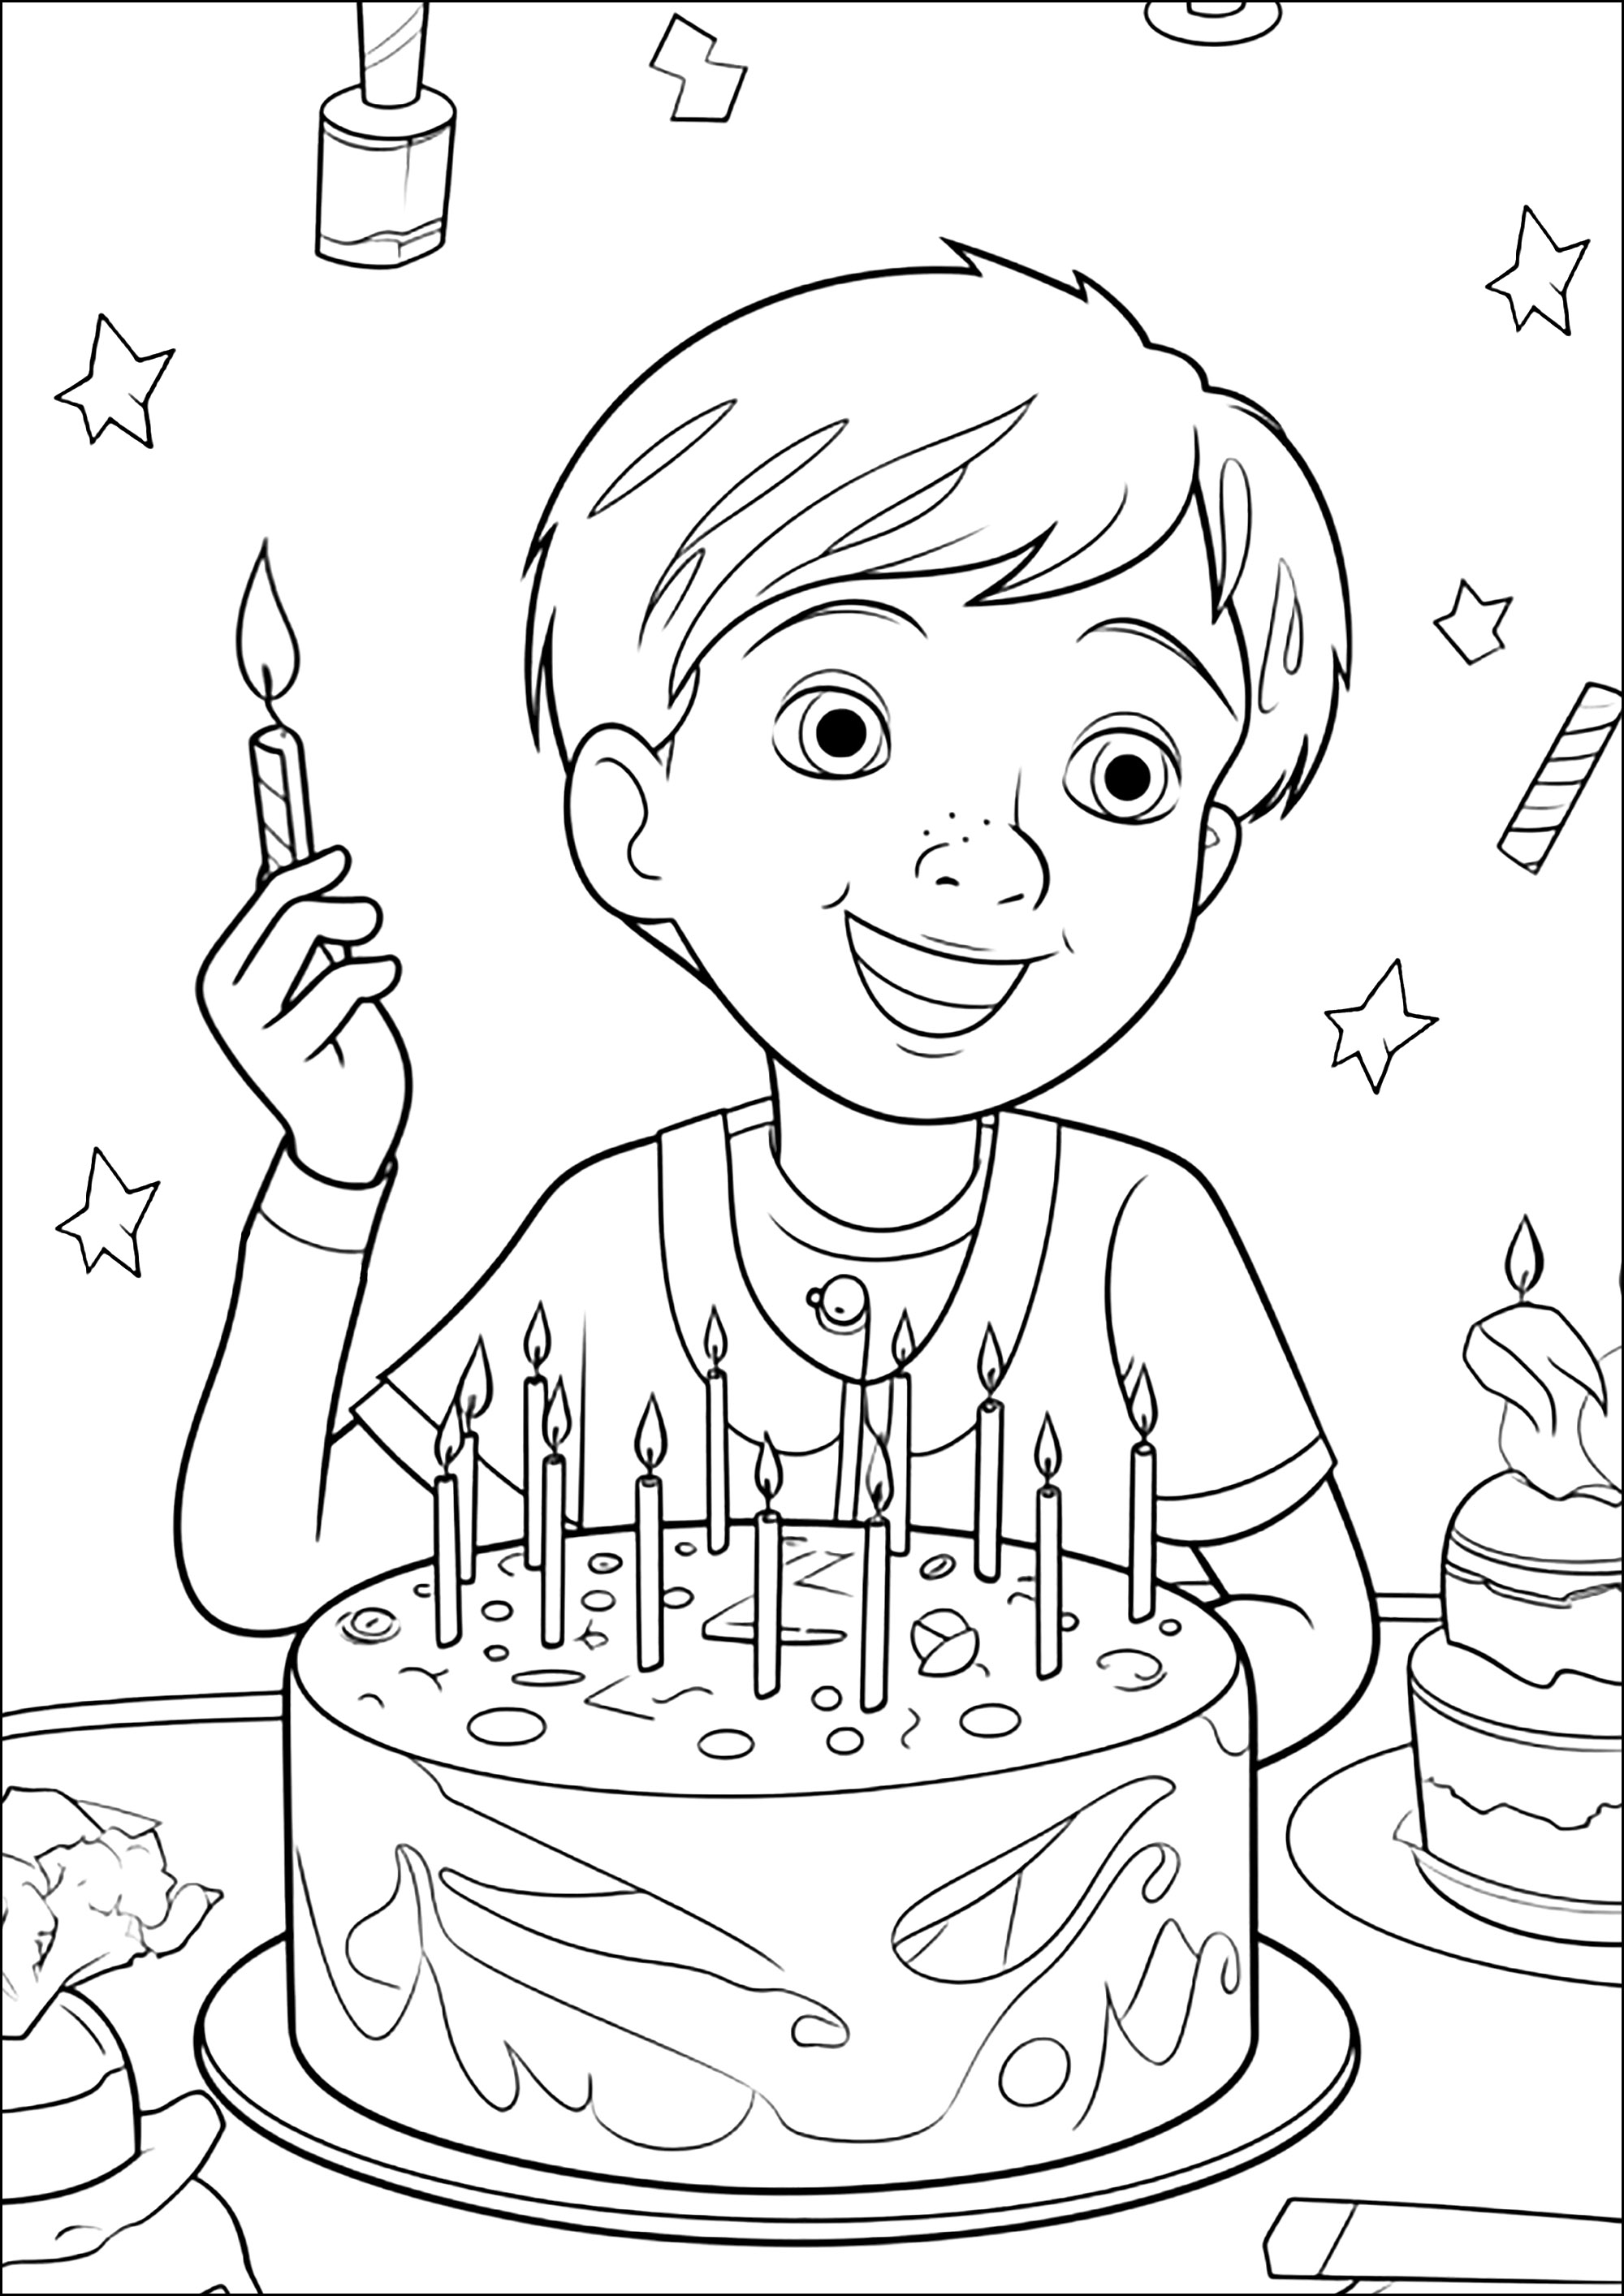 Un garçon qui fête son anniversaire avec un joli gateau